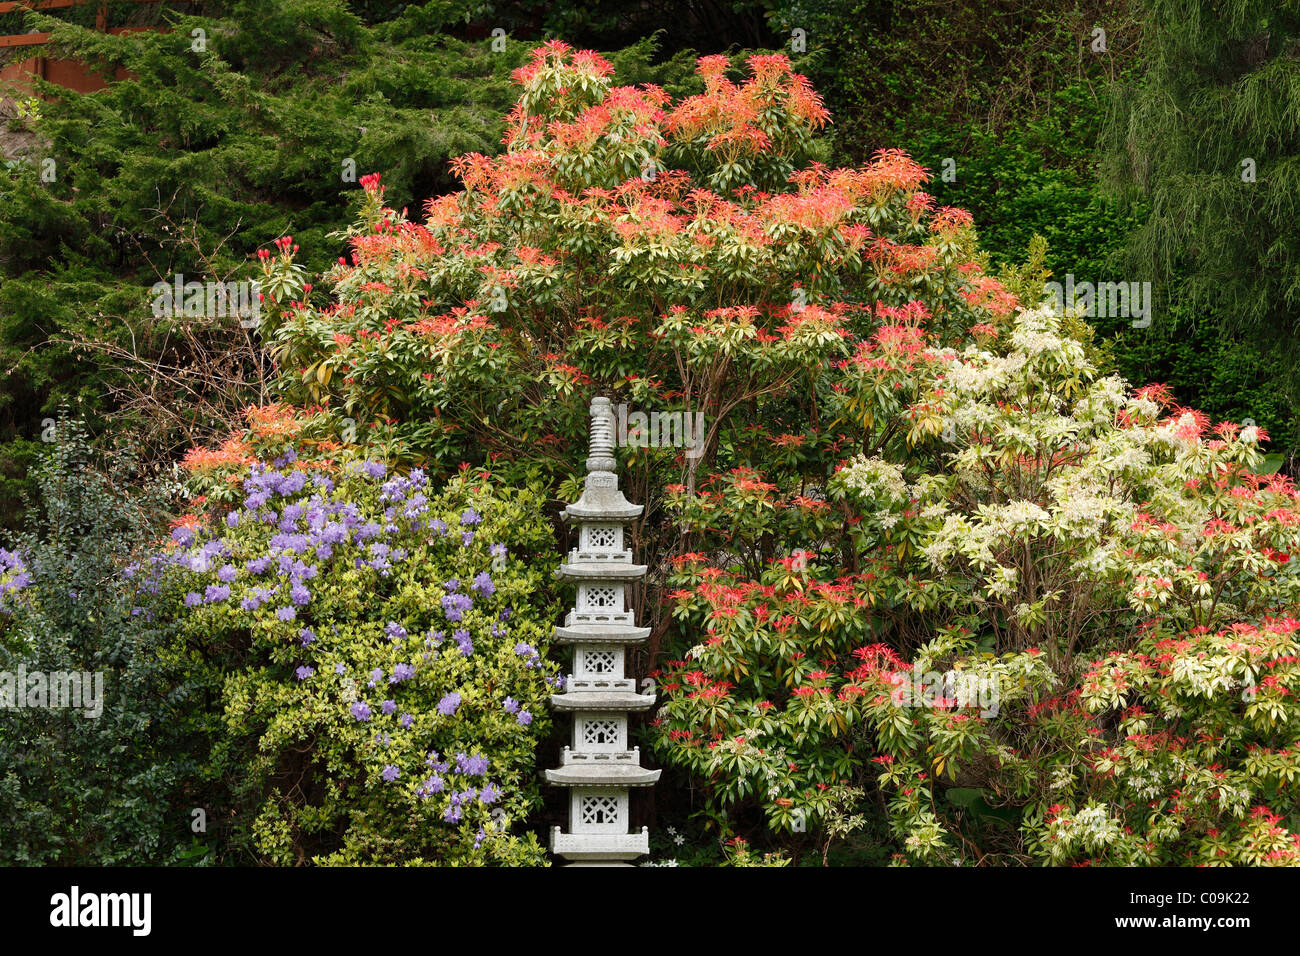 Jardin japonais, jardin, jardin de Powerscourt Powerscourt House, comté de Wicklow, Irlande, British Isles, Europe Banque D'Images